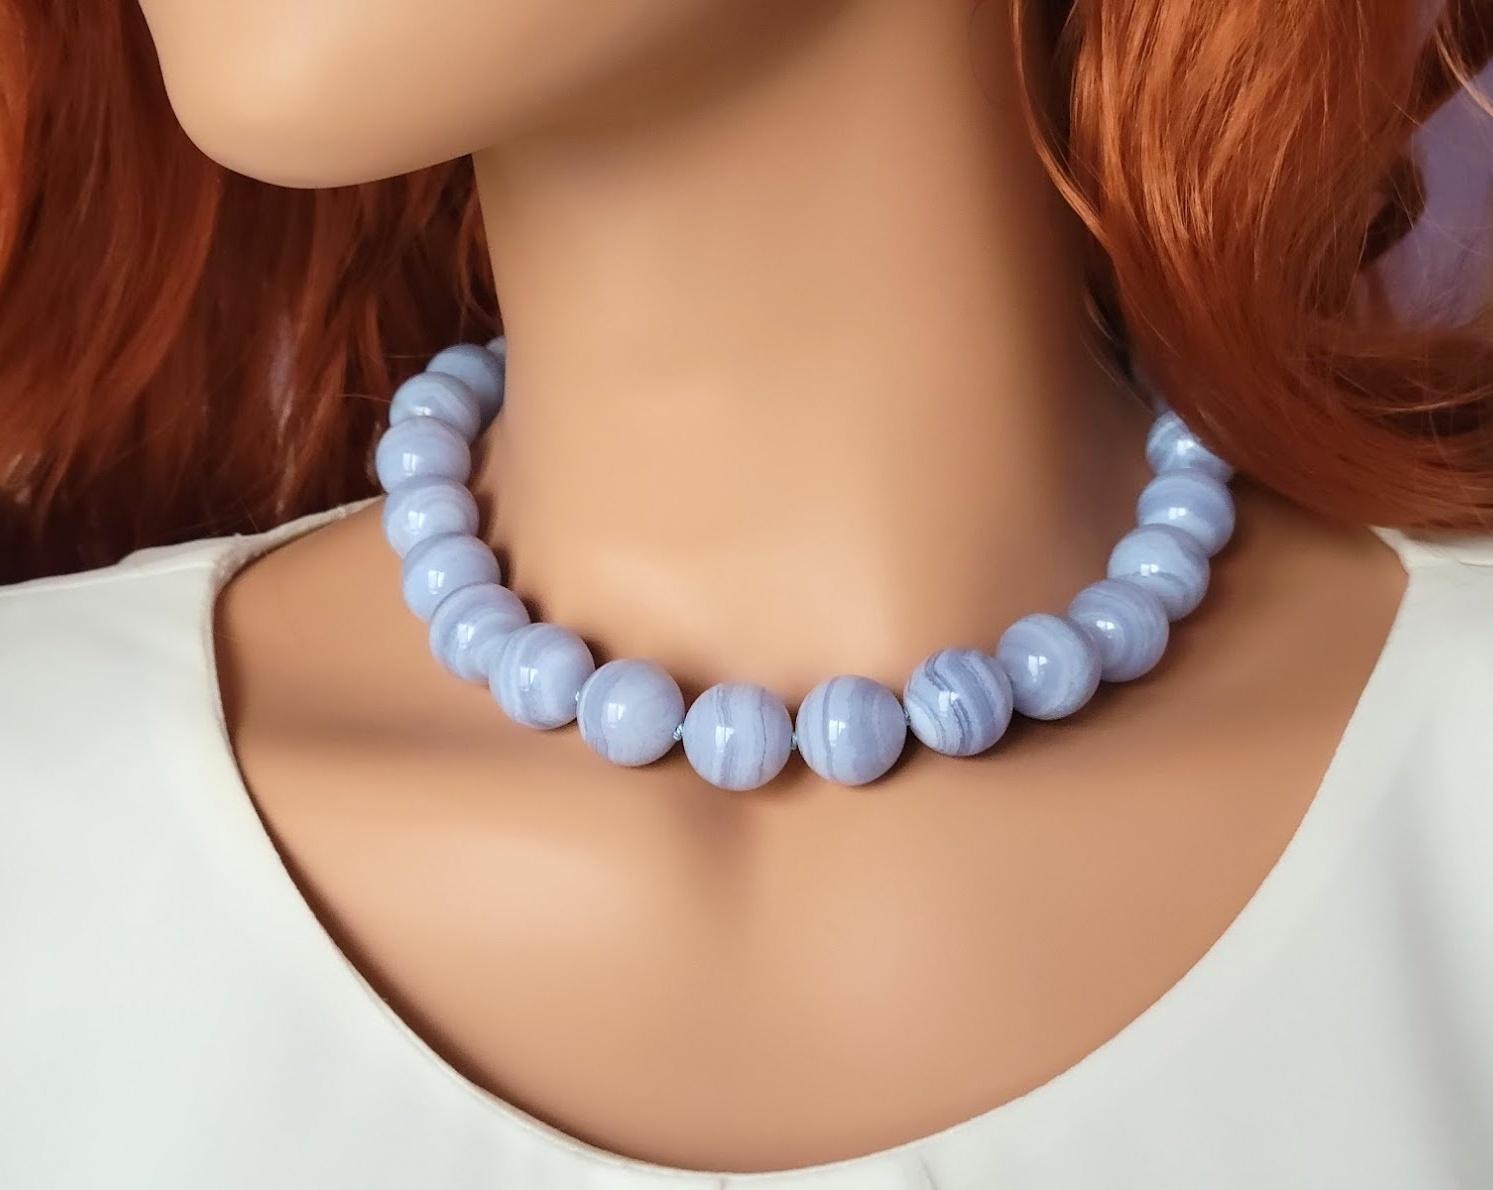 Die Länge der Halskette beträgt 17,5 Zoll (44,5 cm).
Die Größe der glatten runden Perlen beträgt 16 mm.
Blauer Achat und Blauer Spitzenachat sind austauschbare Bezeichnungen für die gleiche Art von gebändertem Chalcedon, der zur Familie der